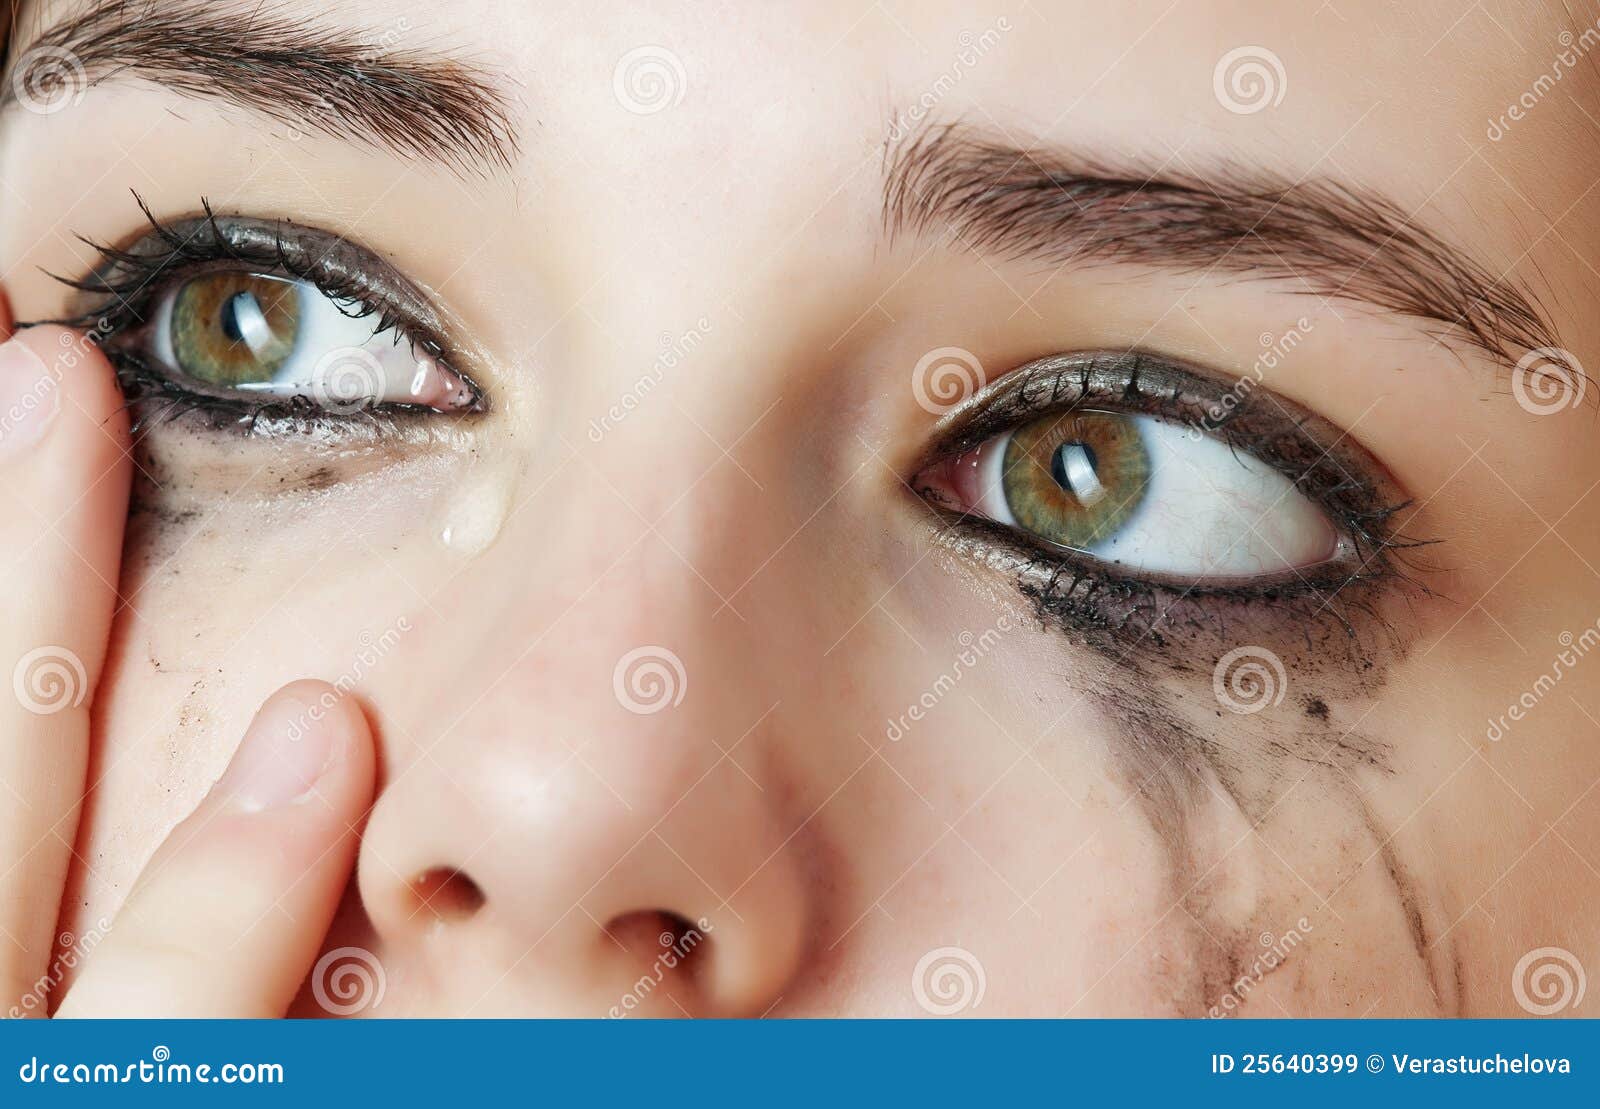 Crying eyes stock image. Image of crying, makeup, female - 25640399